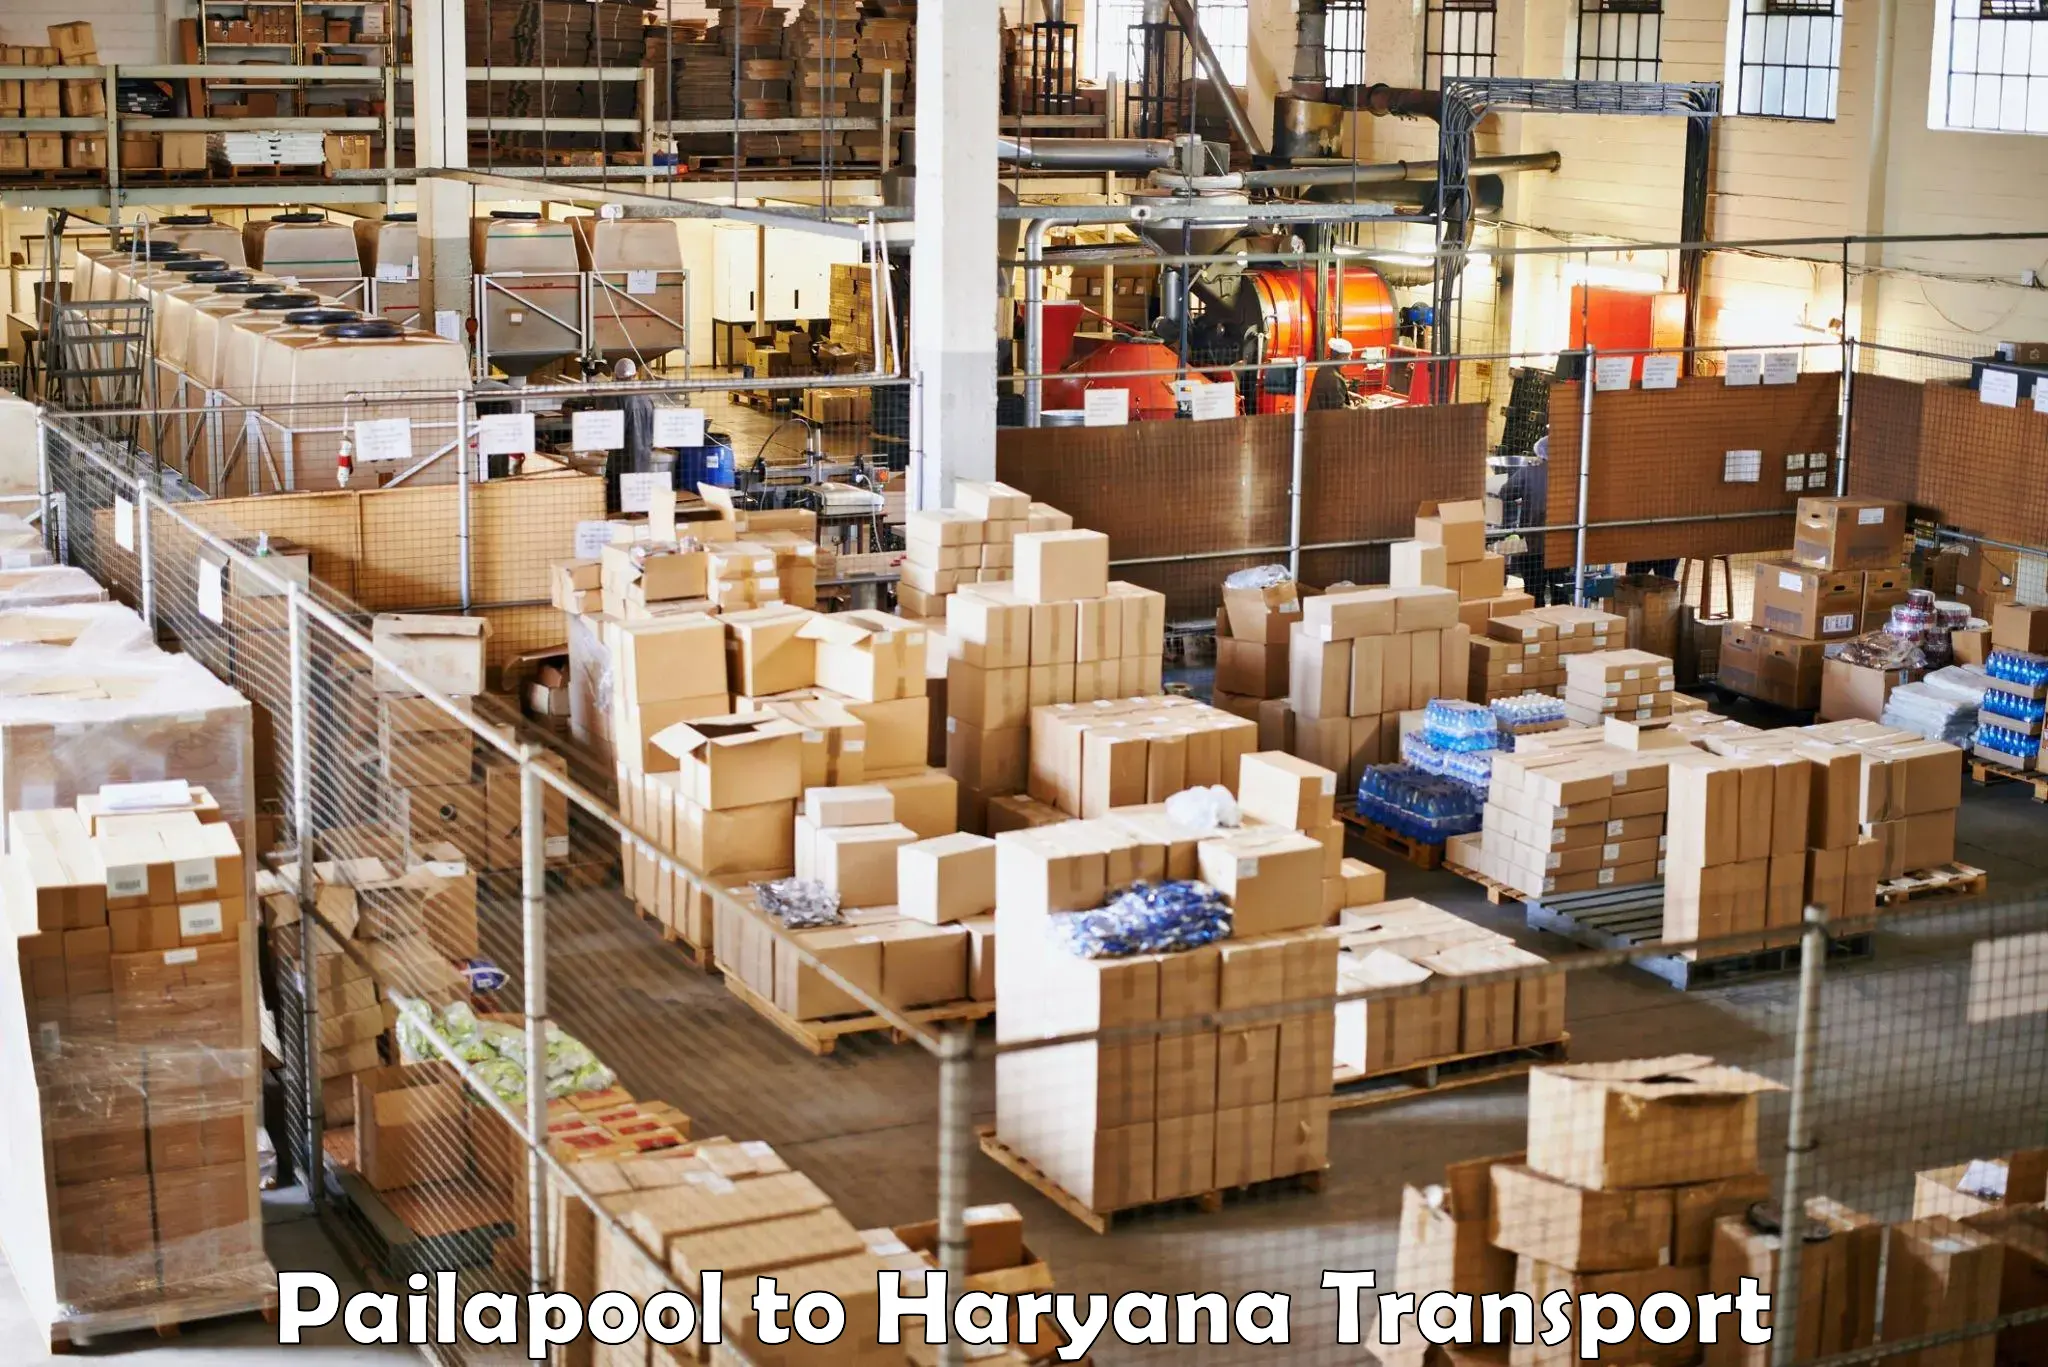 Lorry transport service Pailapool to Haryana